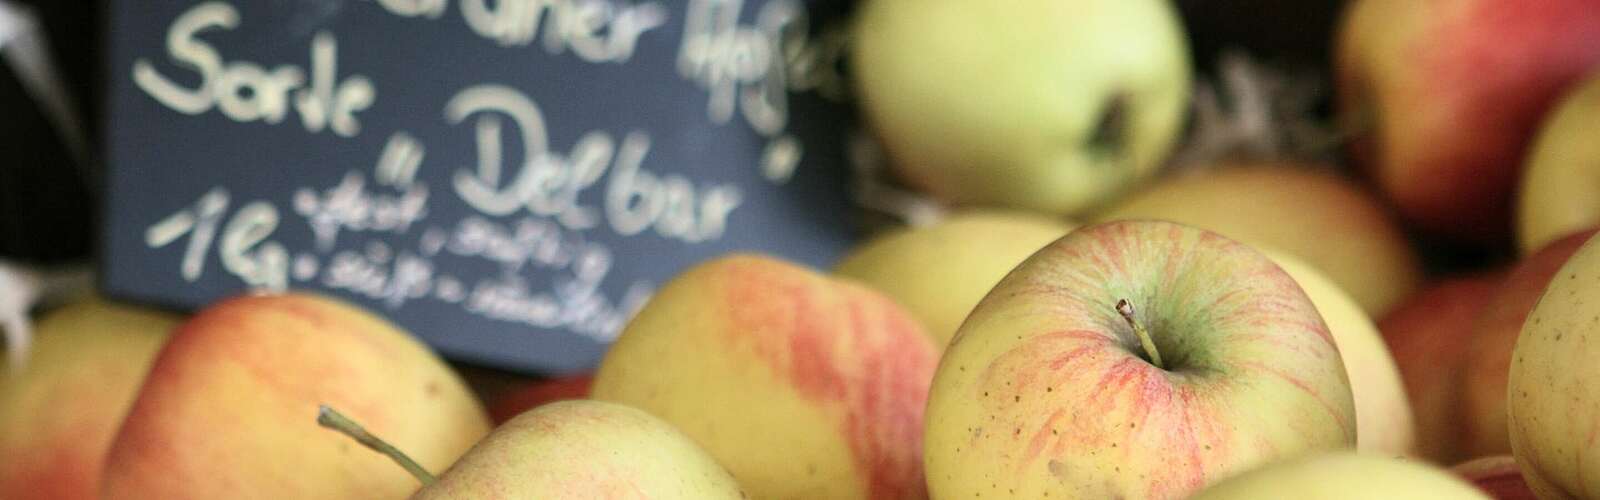 Äpfel im Hofladen,
        
    

        Foto: TMB-Fotoarchiv/Steffen Lehmann